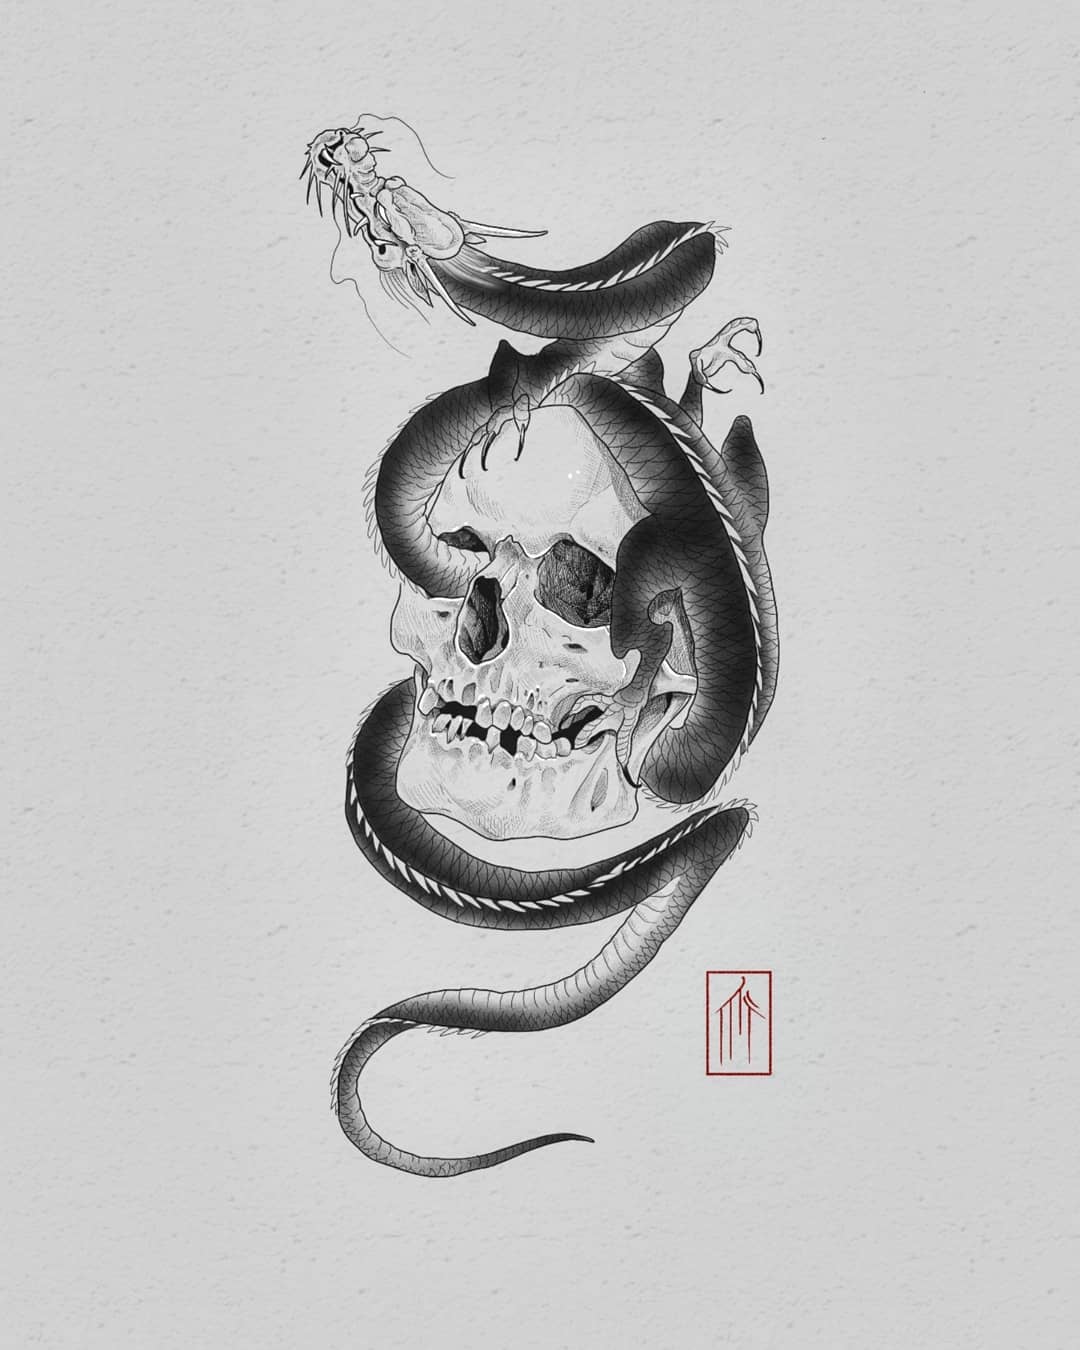 Dragon on skull wannado 
.
.
.
.
.
#japanesetattoo #dragon #dragontattoo #tattoo